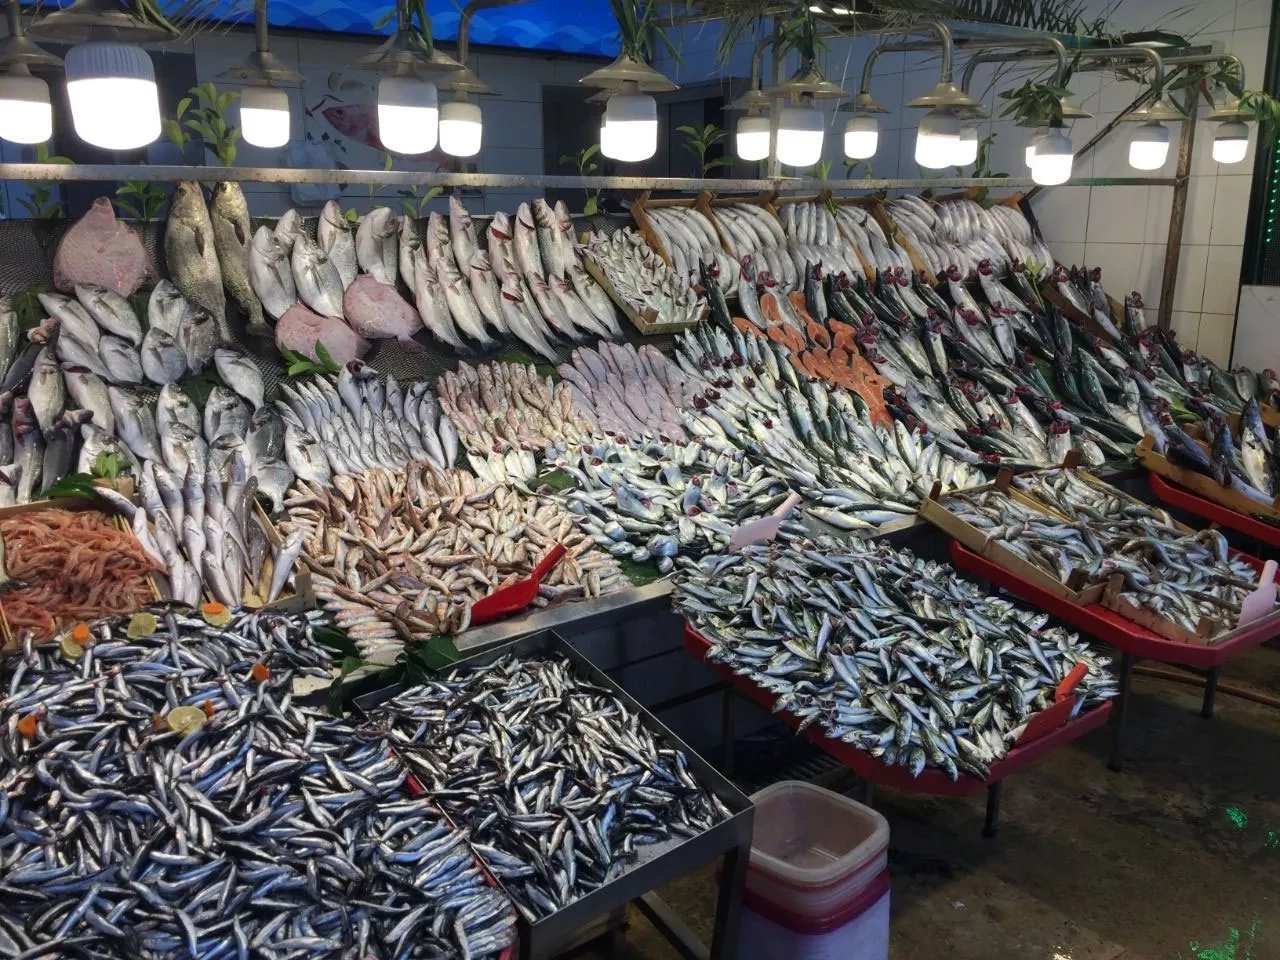 يجب الحرص على عدم شراء الأسماك من أي مكان فذلك قد يهدد صحتك قبل استنزاف مالك